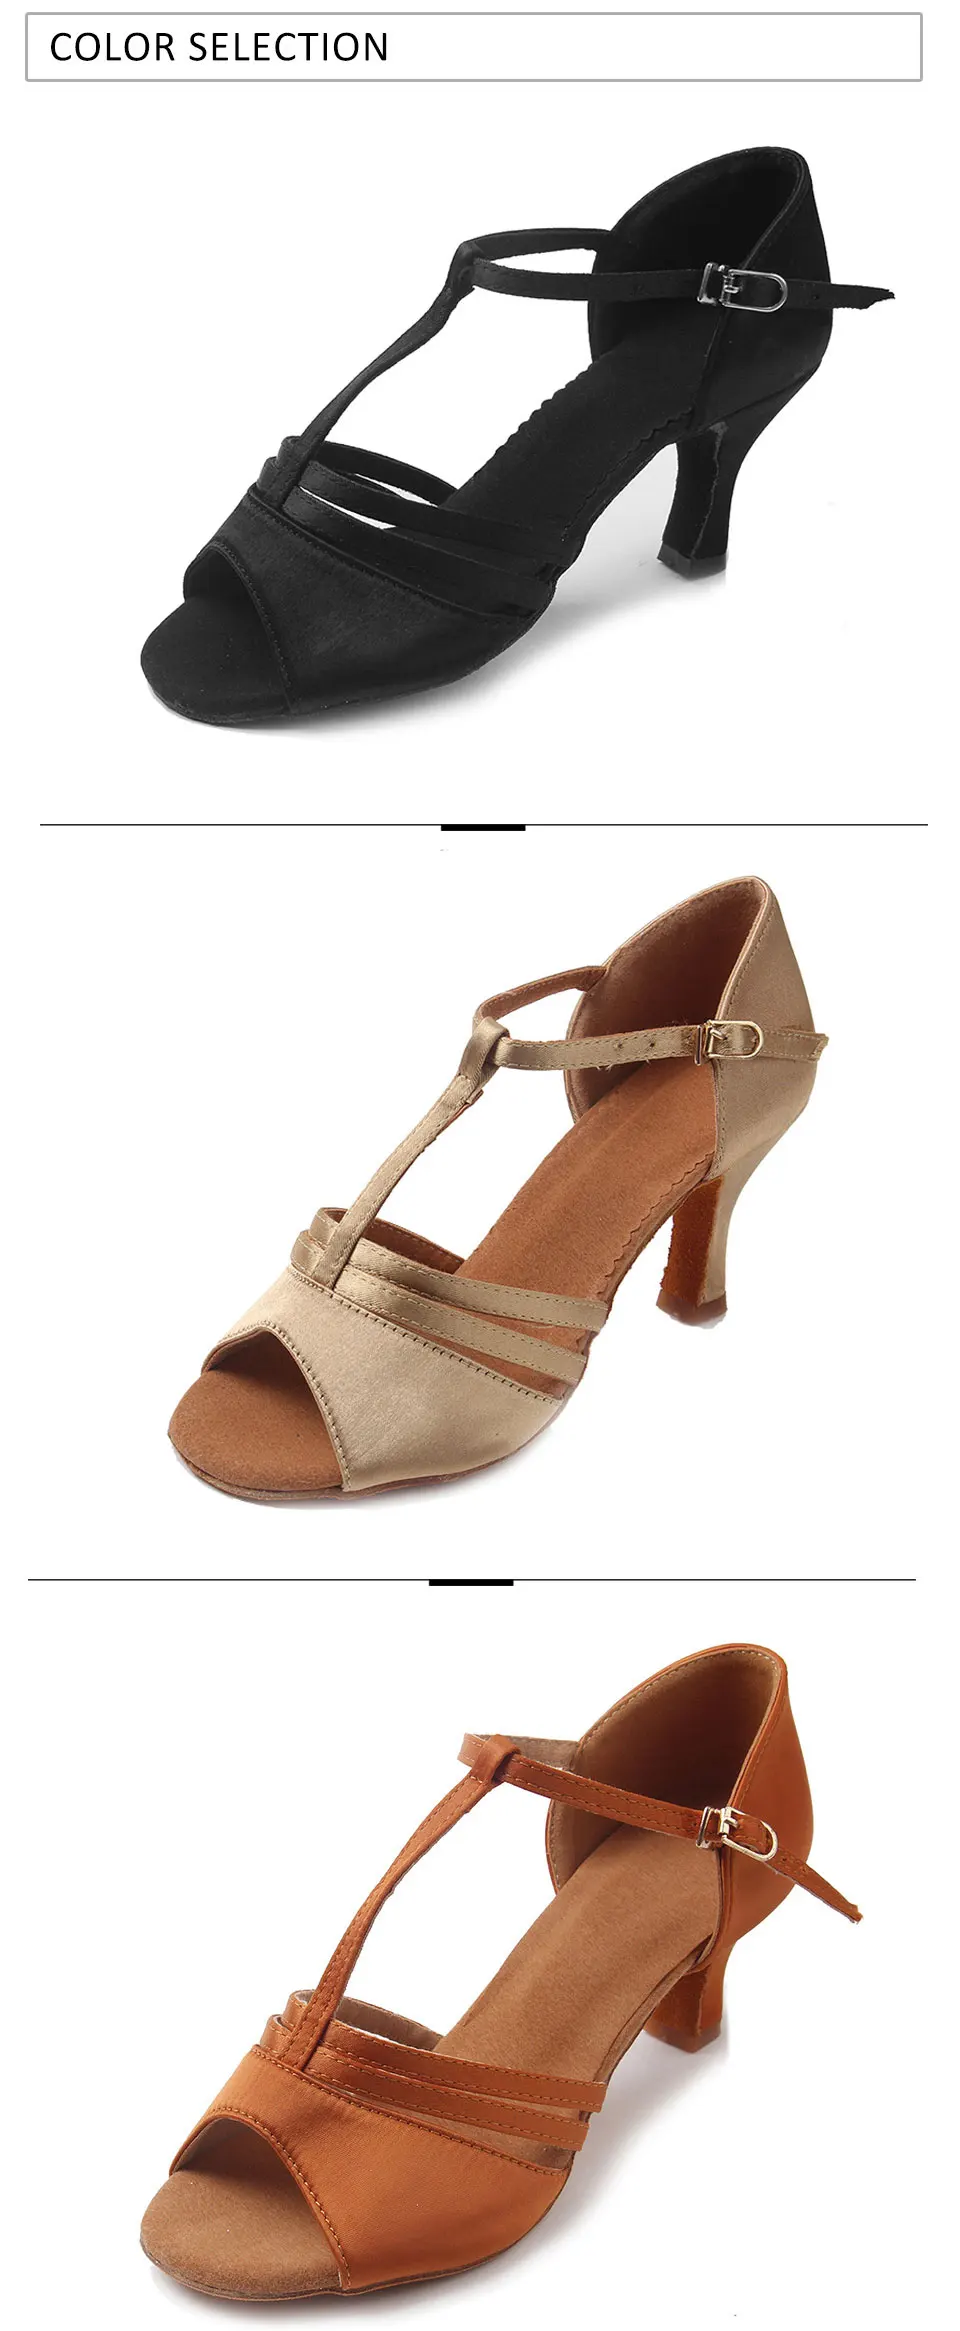 Бальные новые профессиональные латинские танцевальные туфли для женщин/девушек/дам Танго современные на высоком каблуке домашние танцевальные туфли атласная мягкая подошва